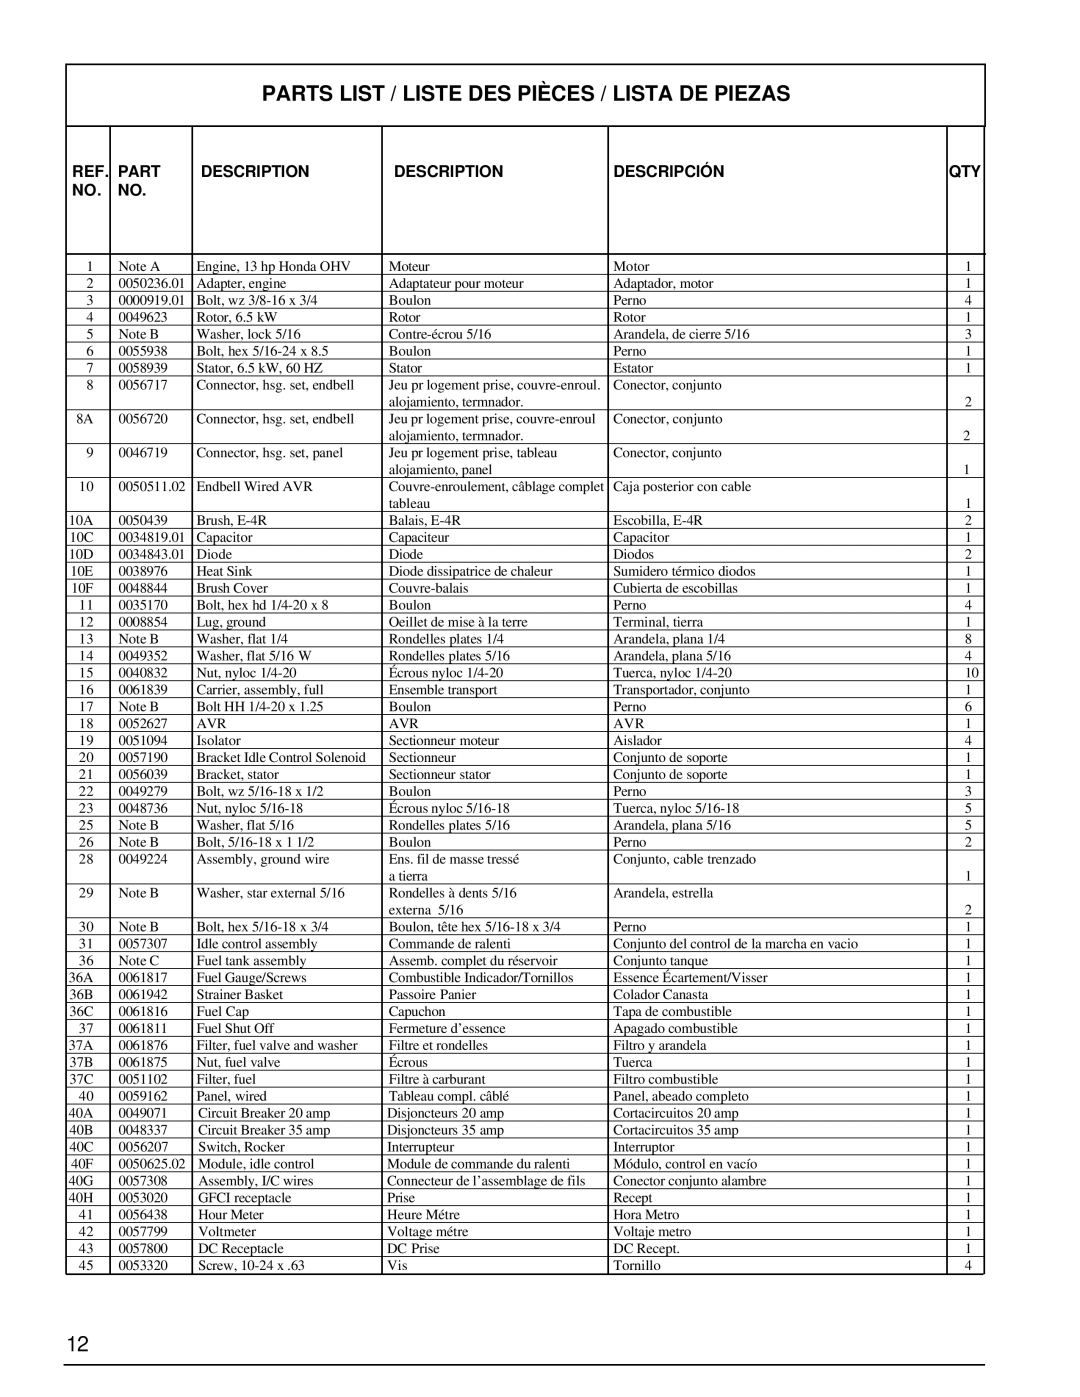 Powermate PM0496504.18 manual Parts List / Liste Des Pièces / Lista De Piezas, Description, Descripción 